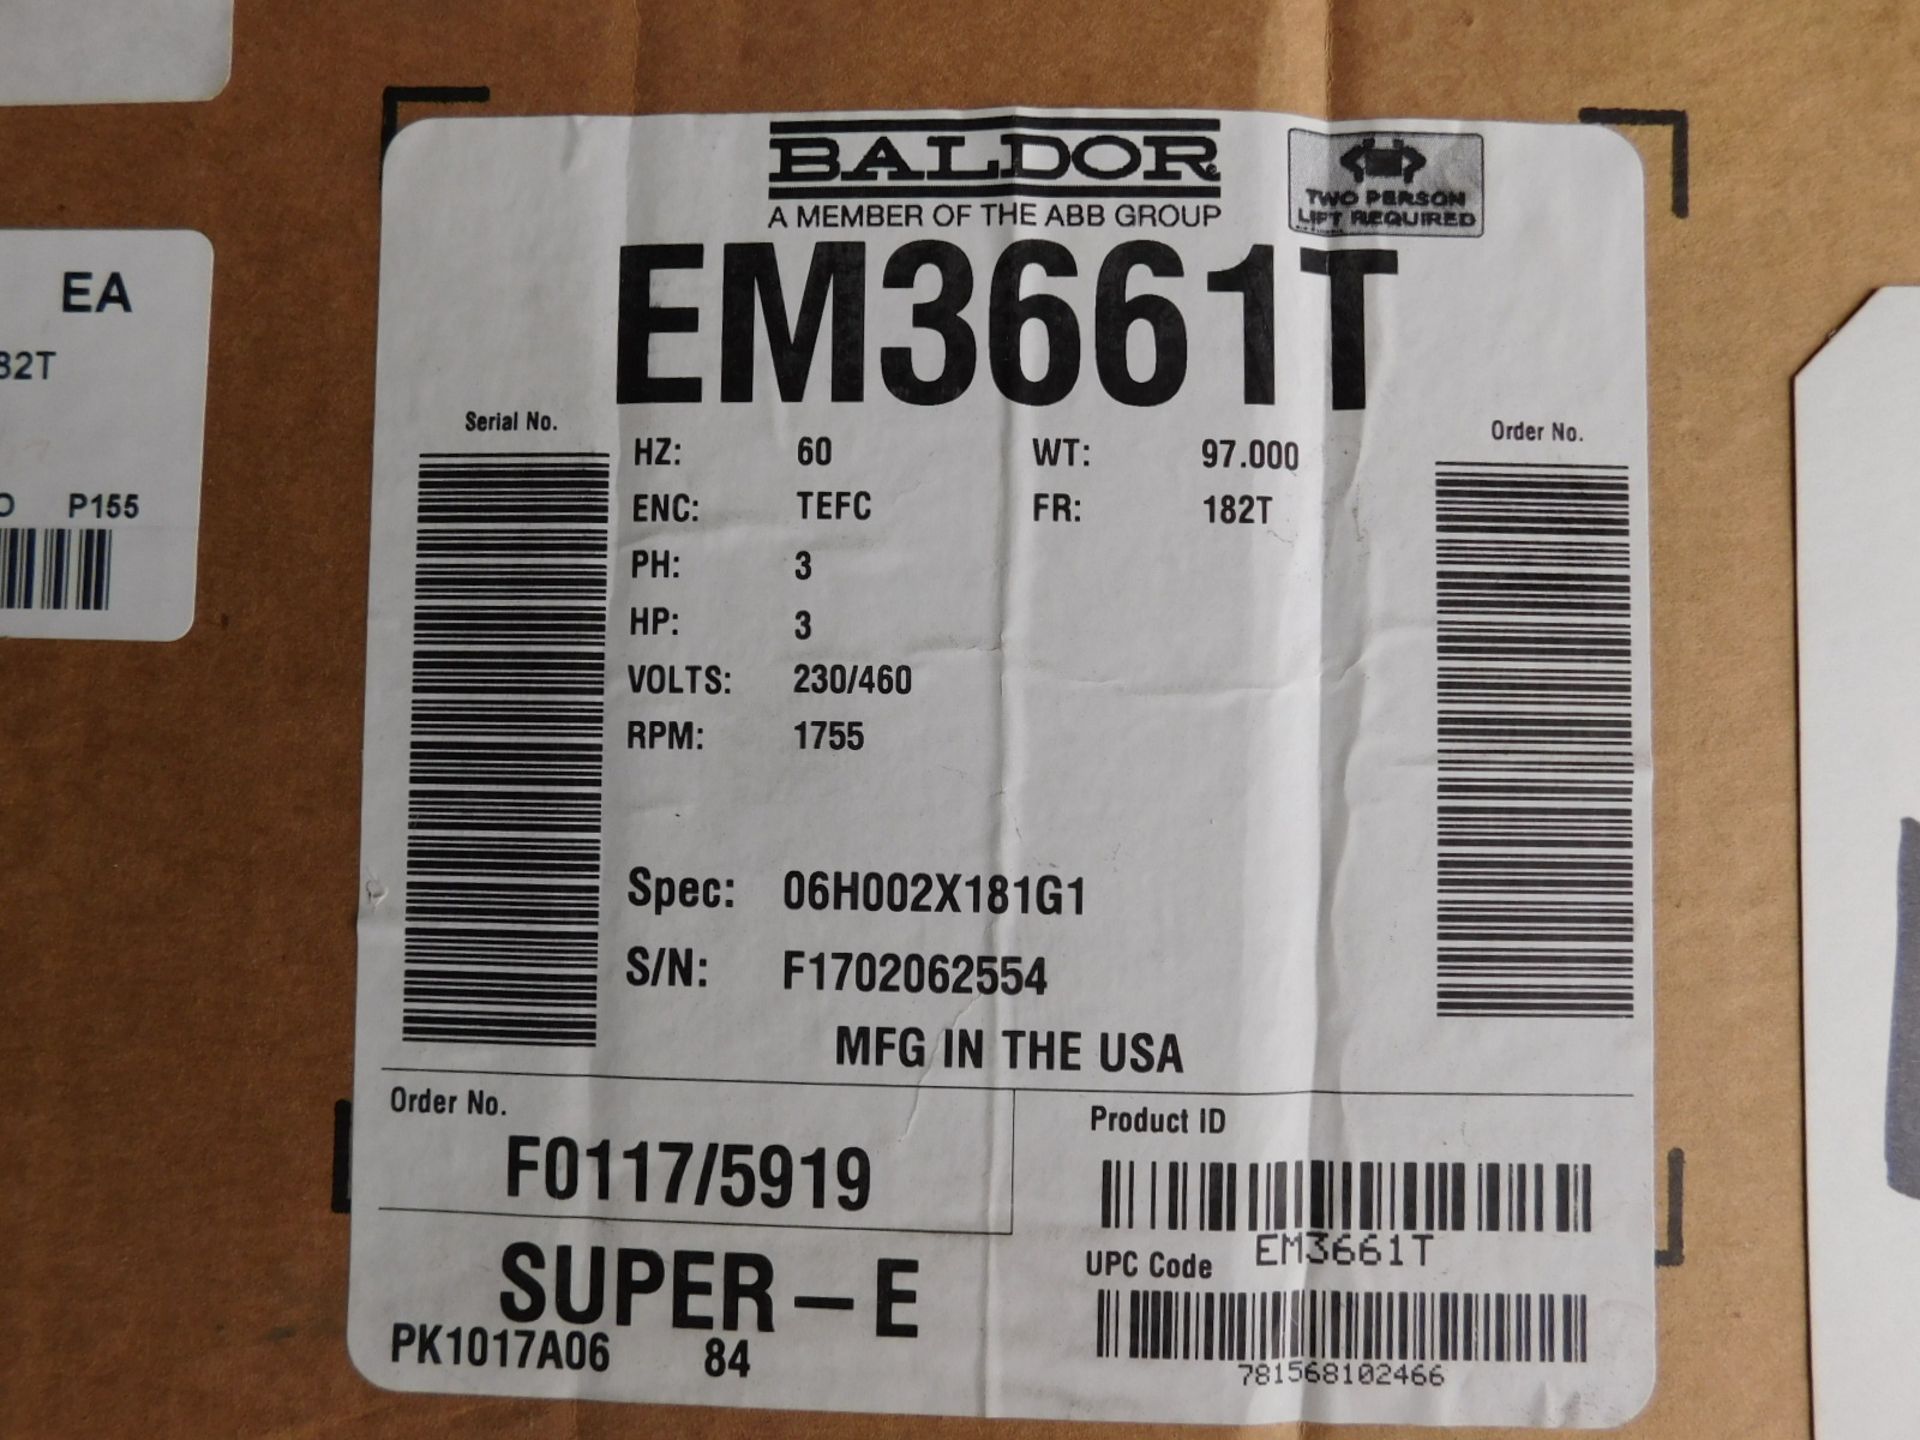 BALDOR EM3661T 3 HP MOTOR, 1755 RPM, 230/460V/3PH, S/N: N/A (DELAYED PICKUP - FEBRUARY 15, 2021)